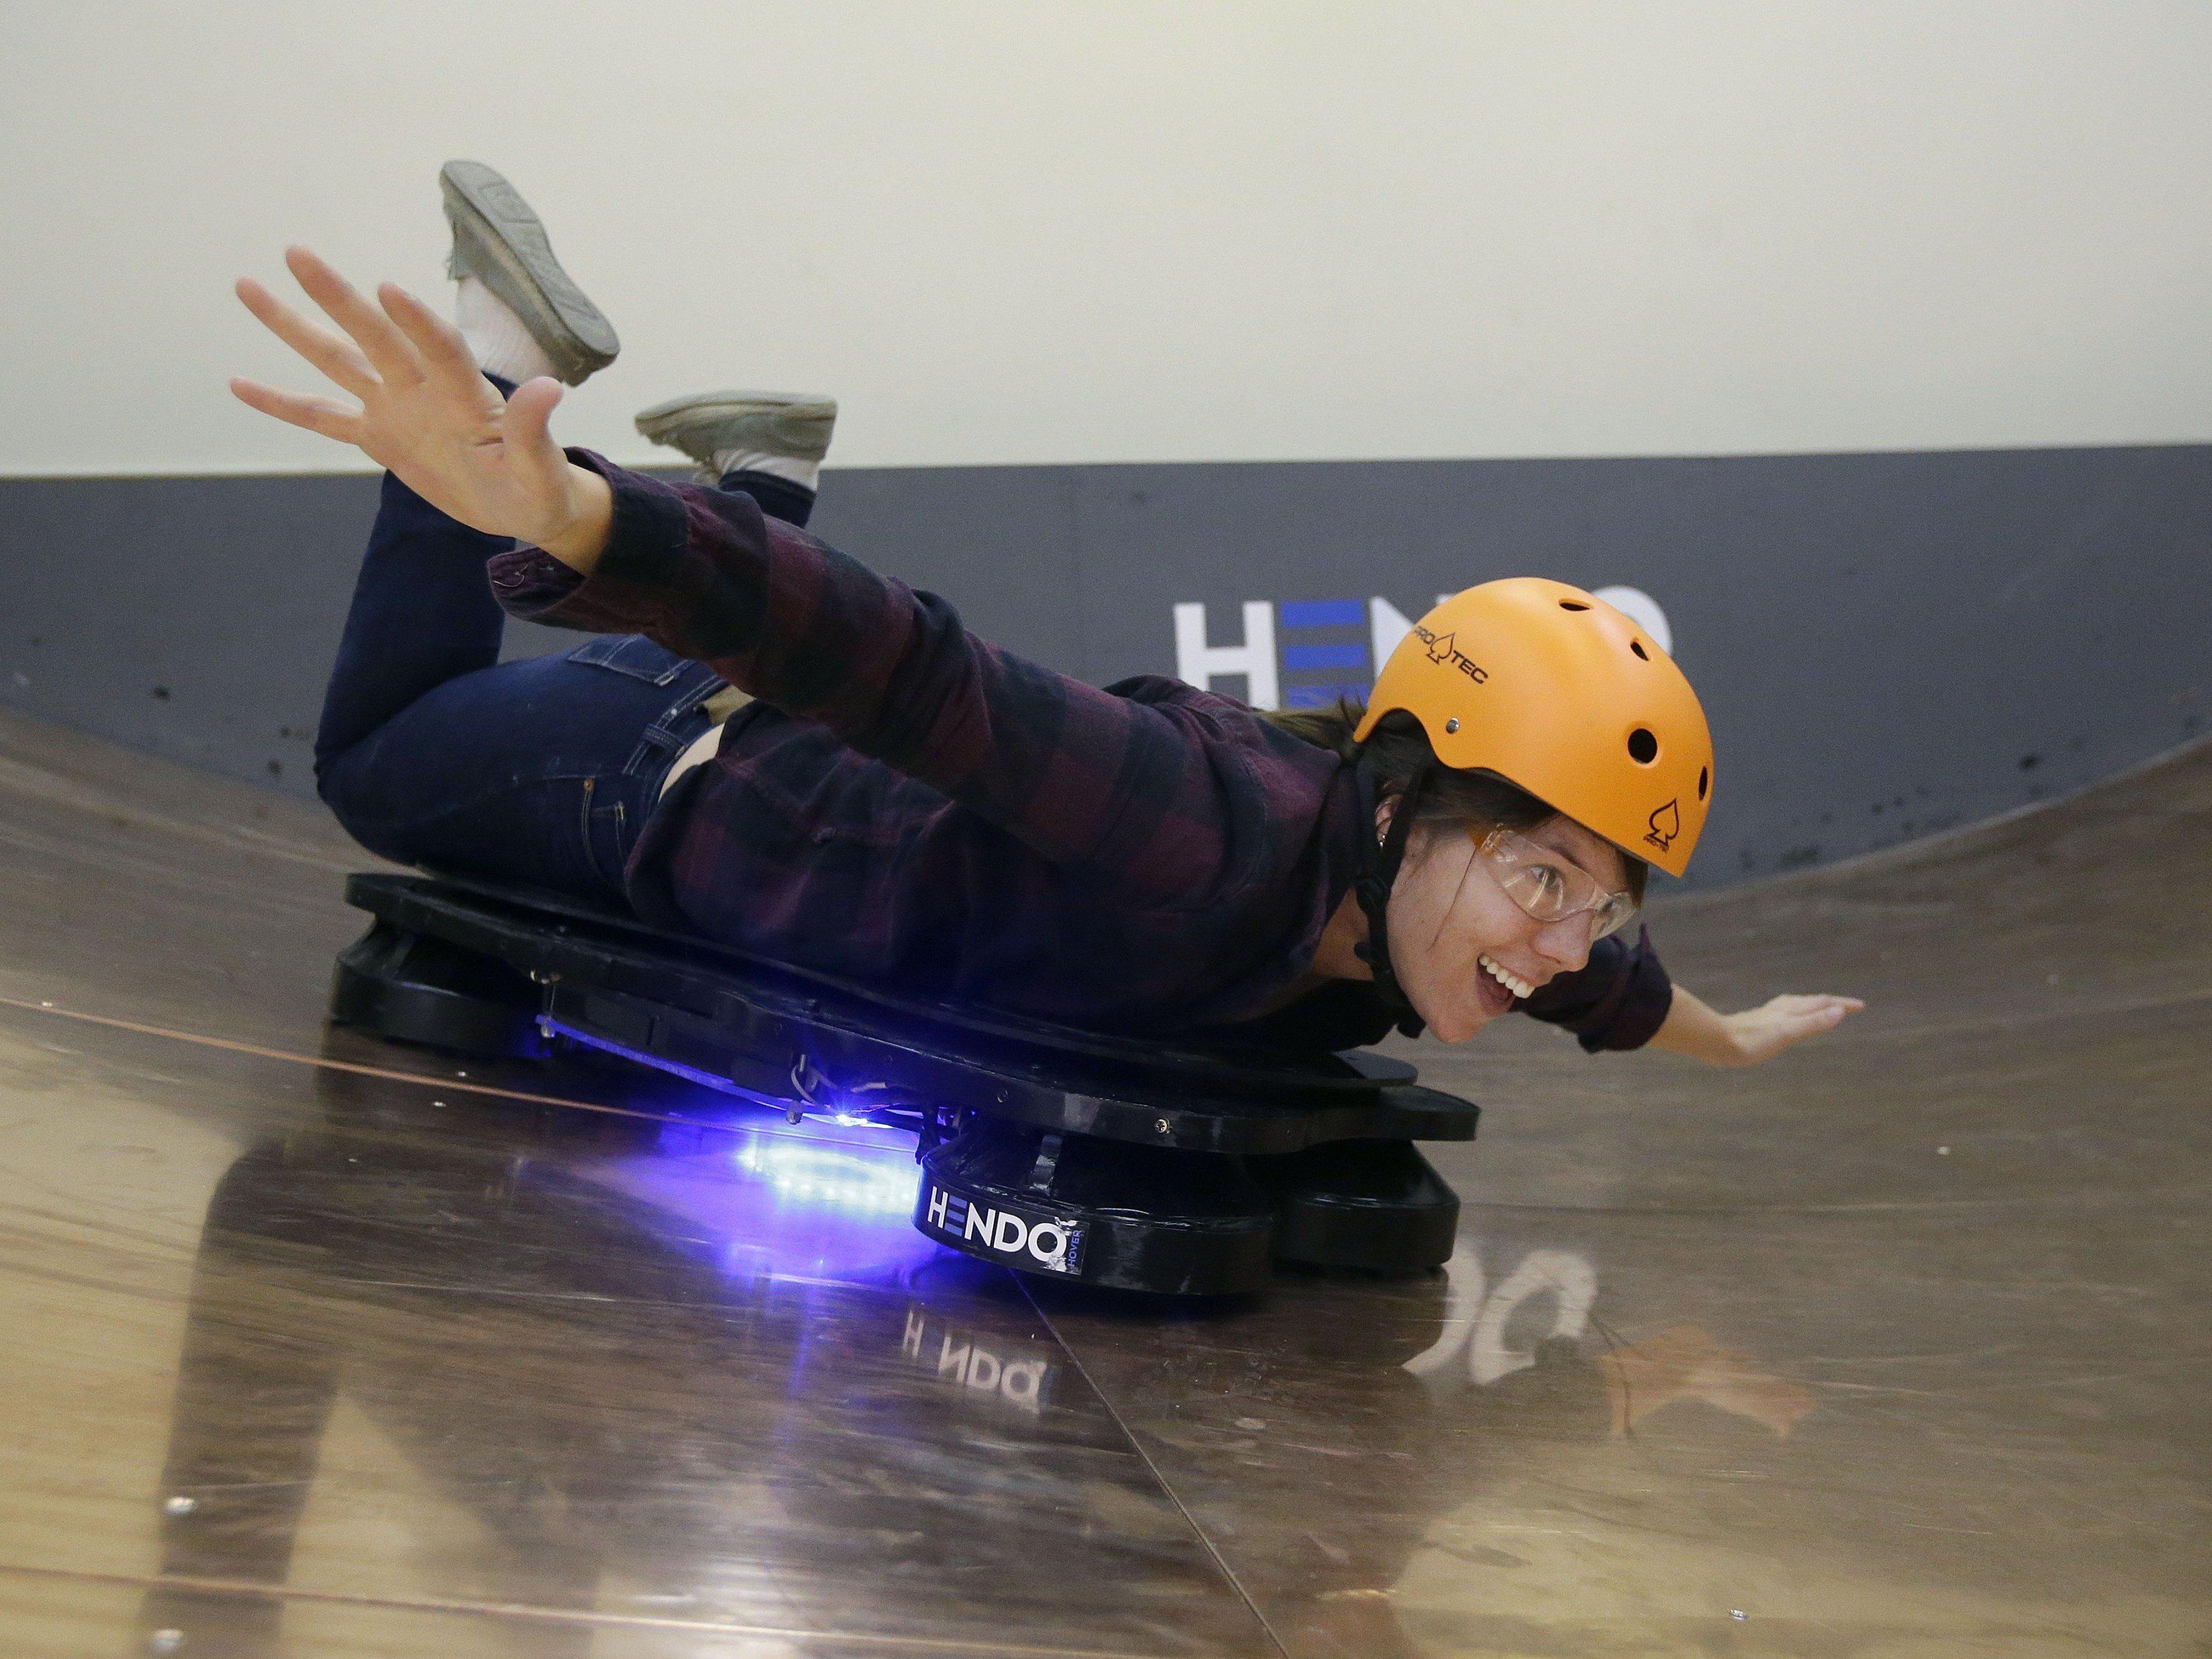 Paar aus Kalifornien erfindet schwebendes Skateboard.